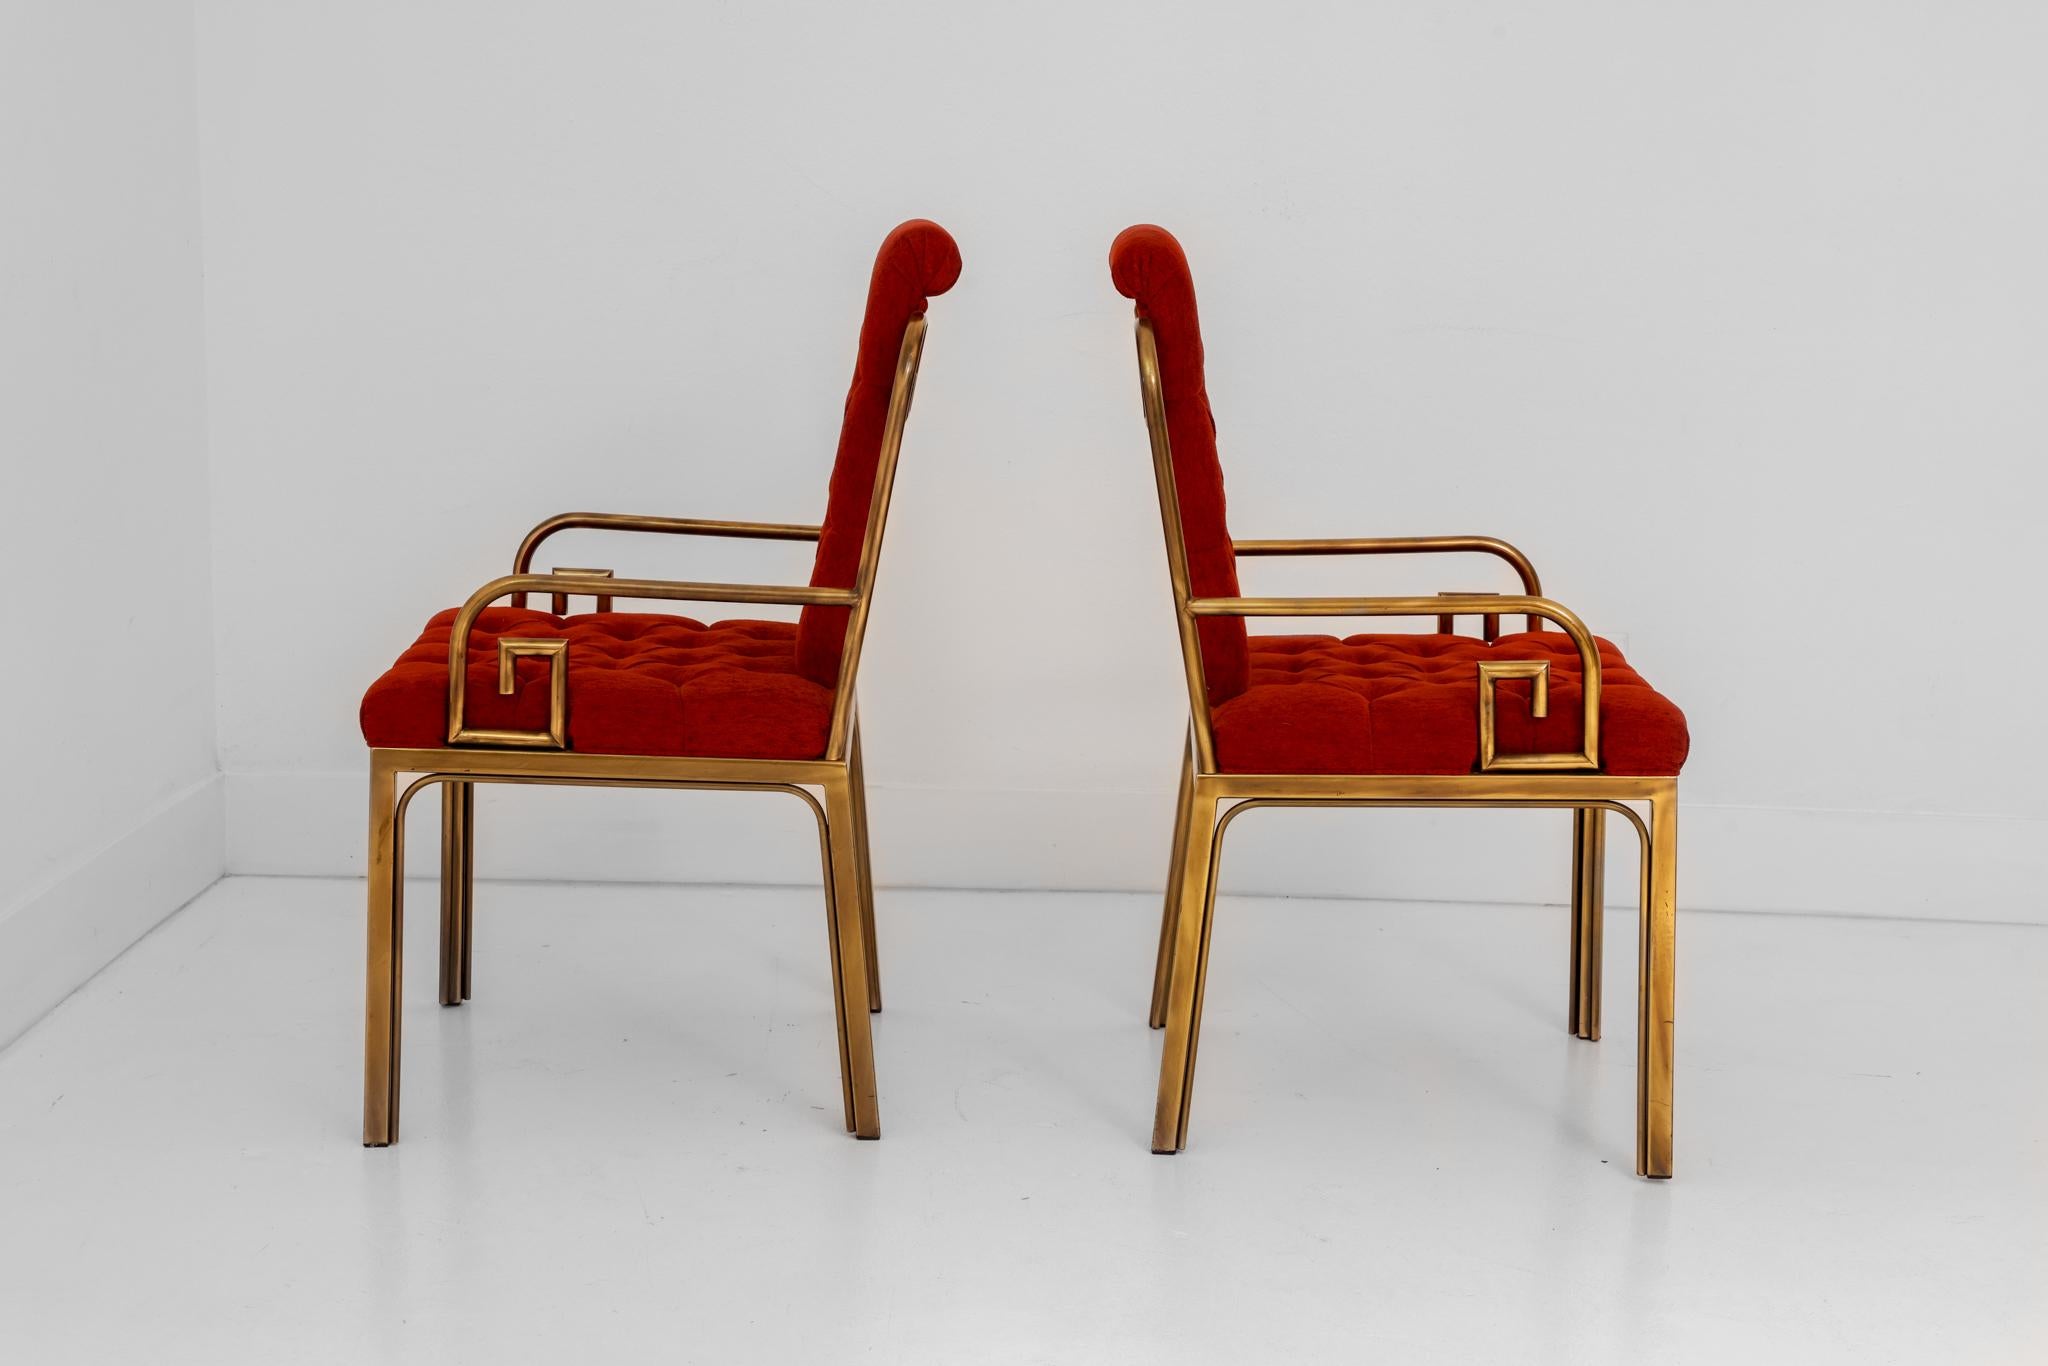 Il s'agit d'une magnifique paire de chaises à bras Mastercraft Greek Key originales, conçues par Bernard Rohne. Le tissu d'origine est un orange brûlé profond, les sièges et les dossiers sont touffetés, ce qui ajoute à l'intérêt de ces chaises. La